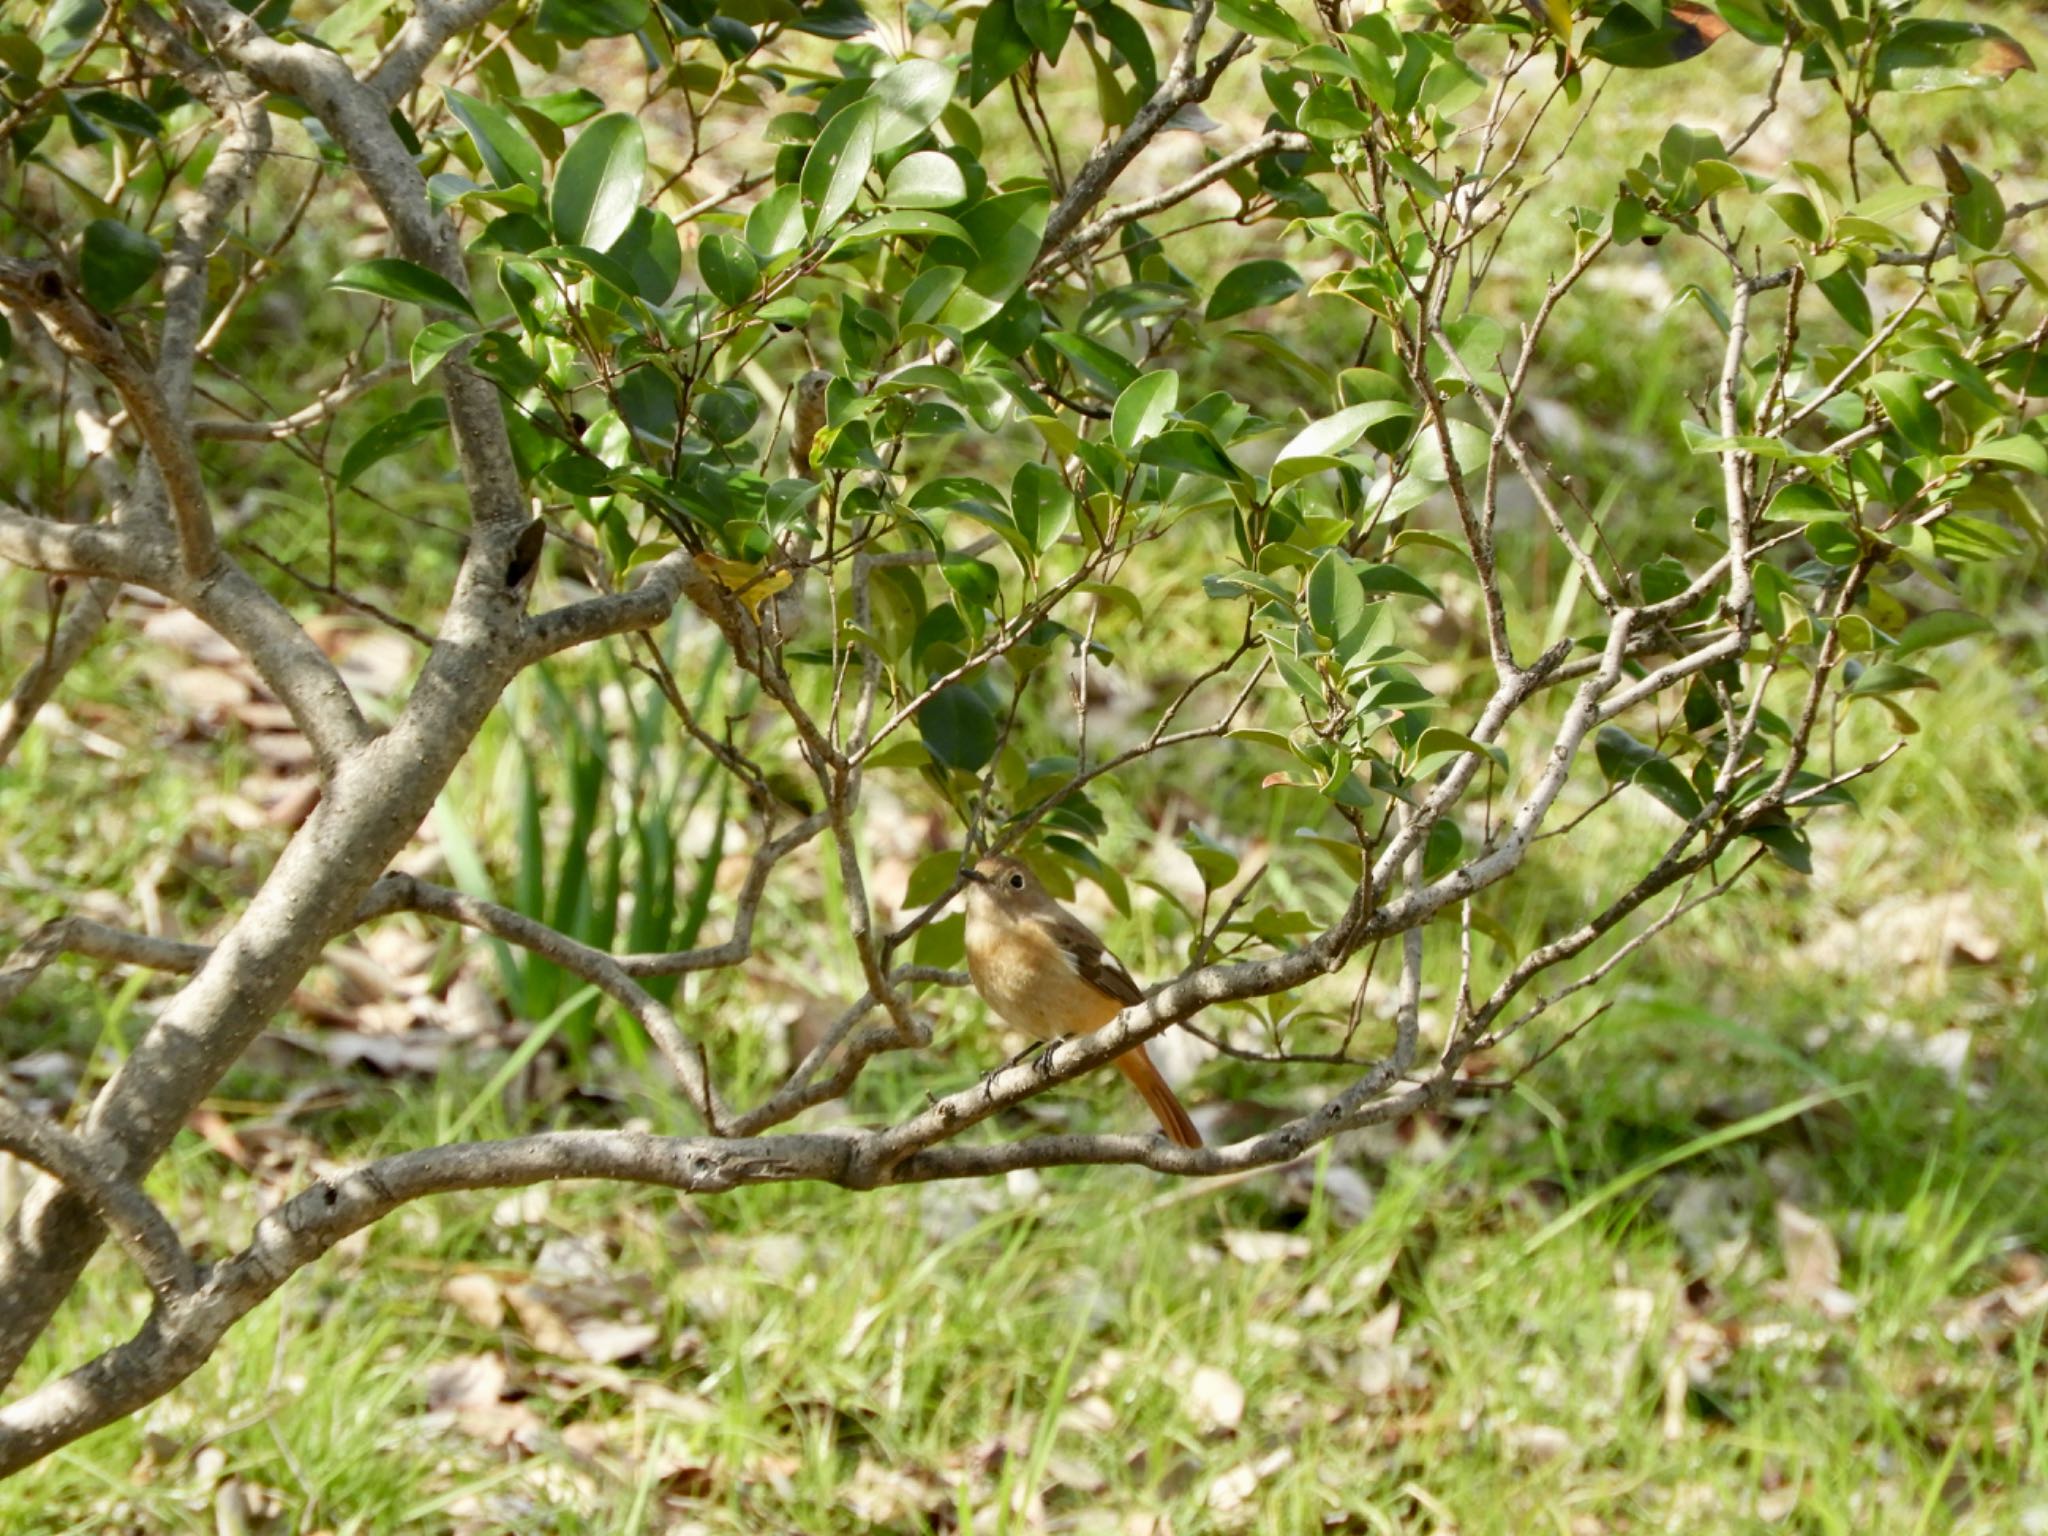 Daurian Redstart